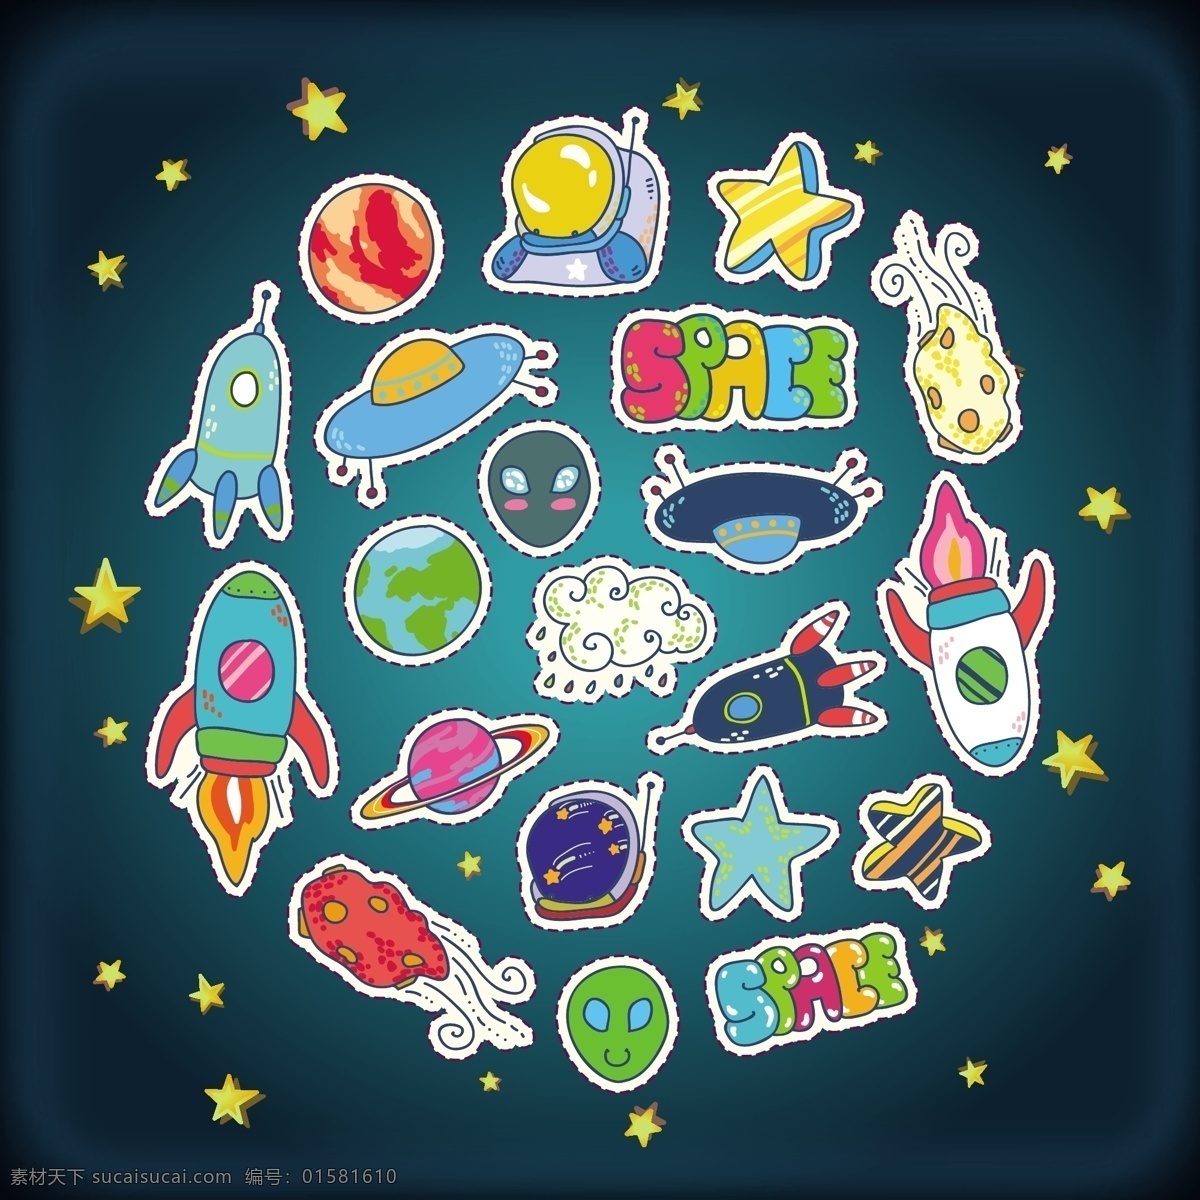 卡通 宇宙 宇航员 航空 天空 元素 星河 矢量 圆形 创意 可爱 太空 地球 外星人 蓝色 底纹 手绘 创意云朵 星星 涂鸦 背景